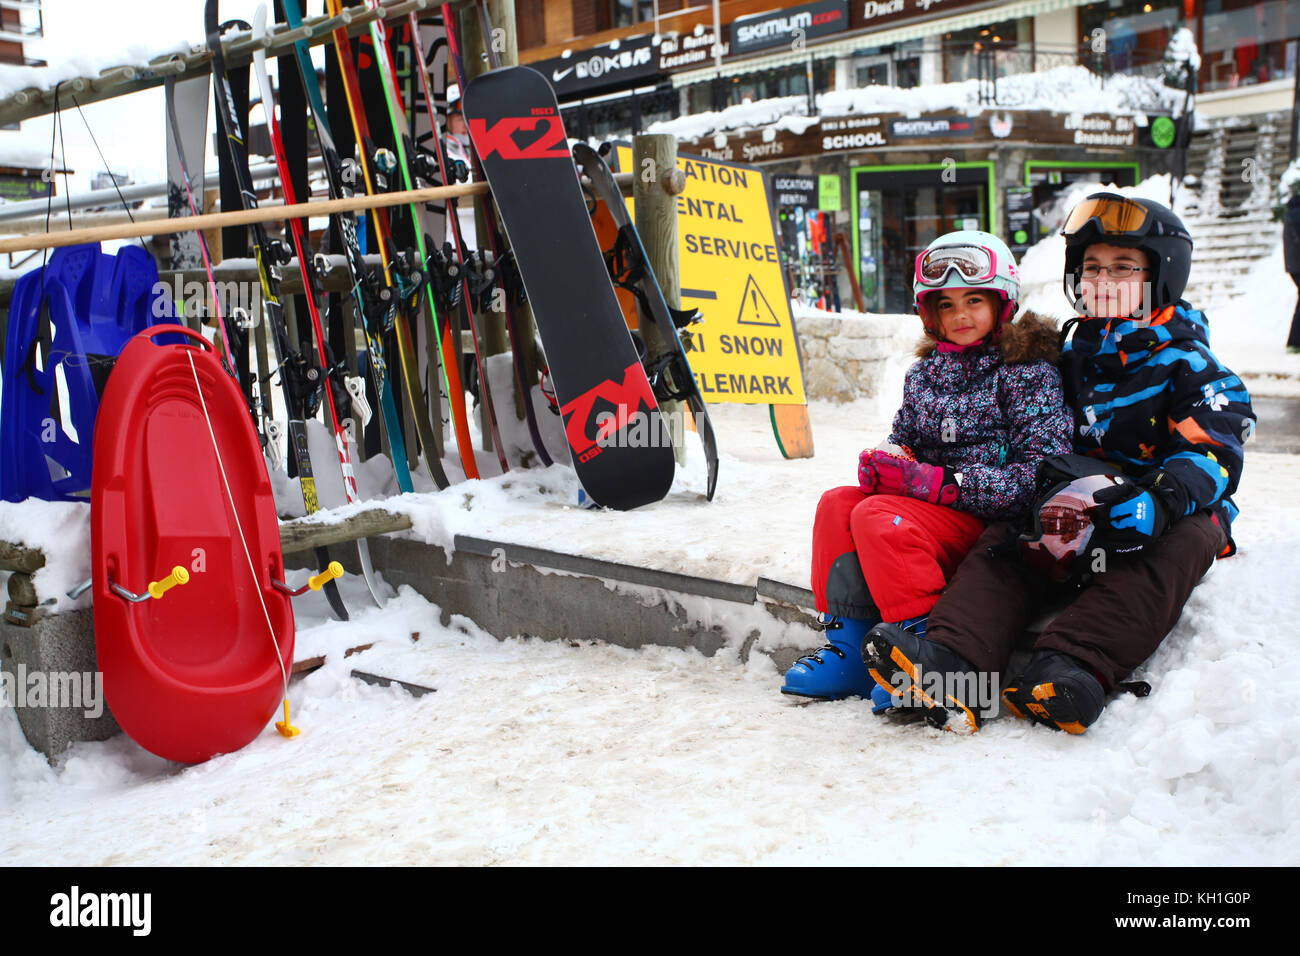 Kinder im Schnee tragen Skianzuege, Helme und Schutzbrillen Stockfoto